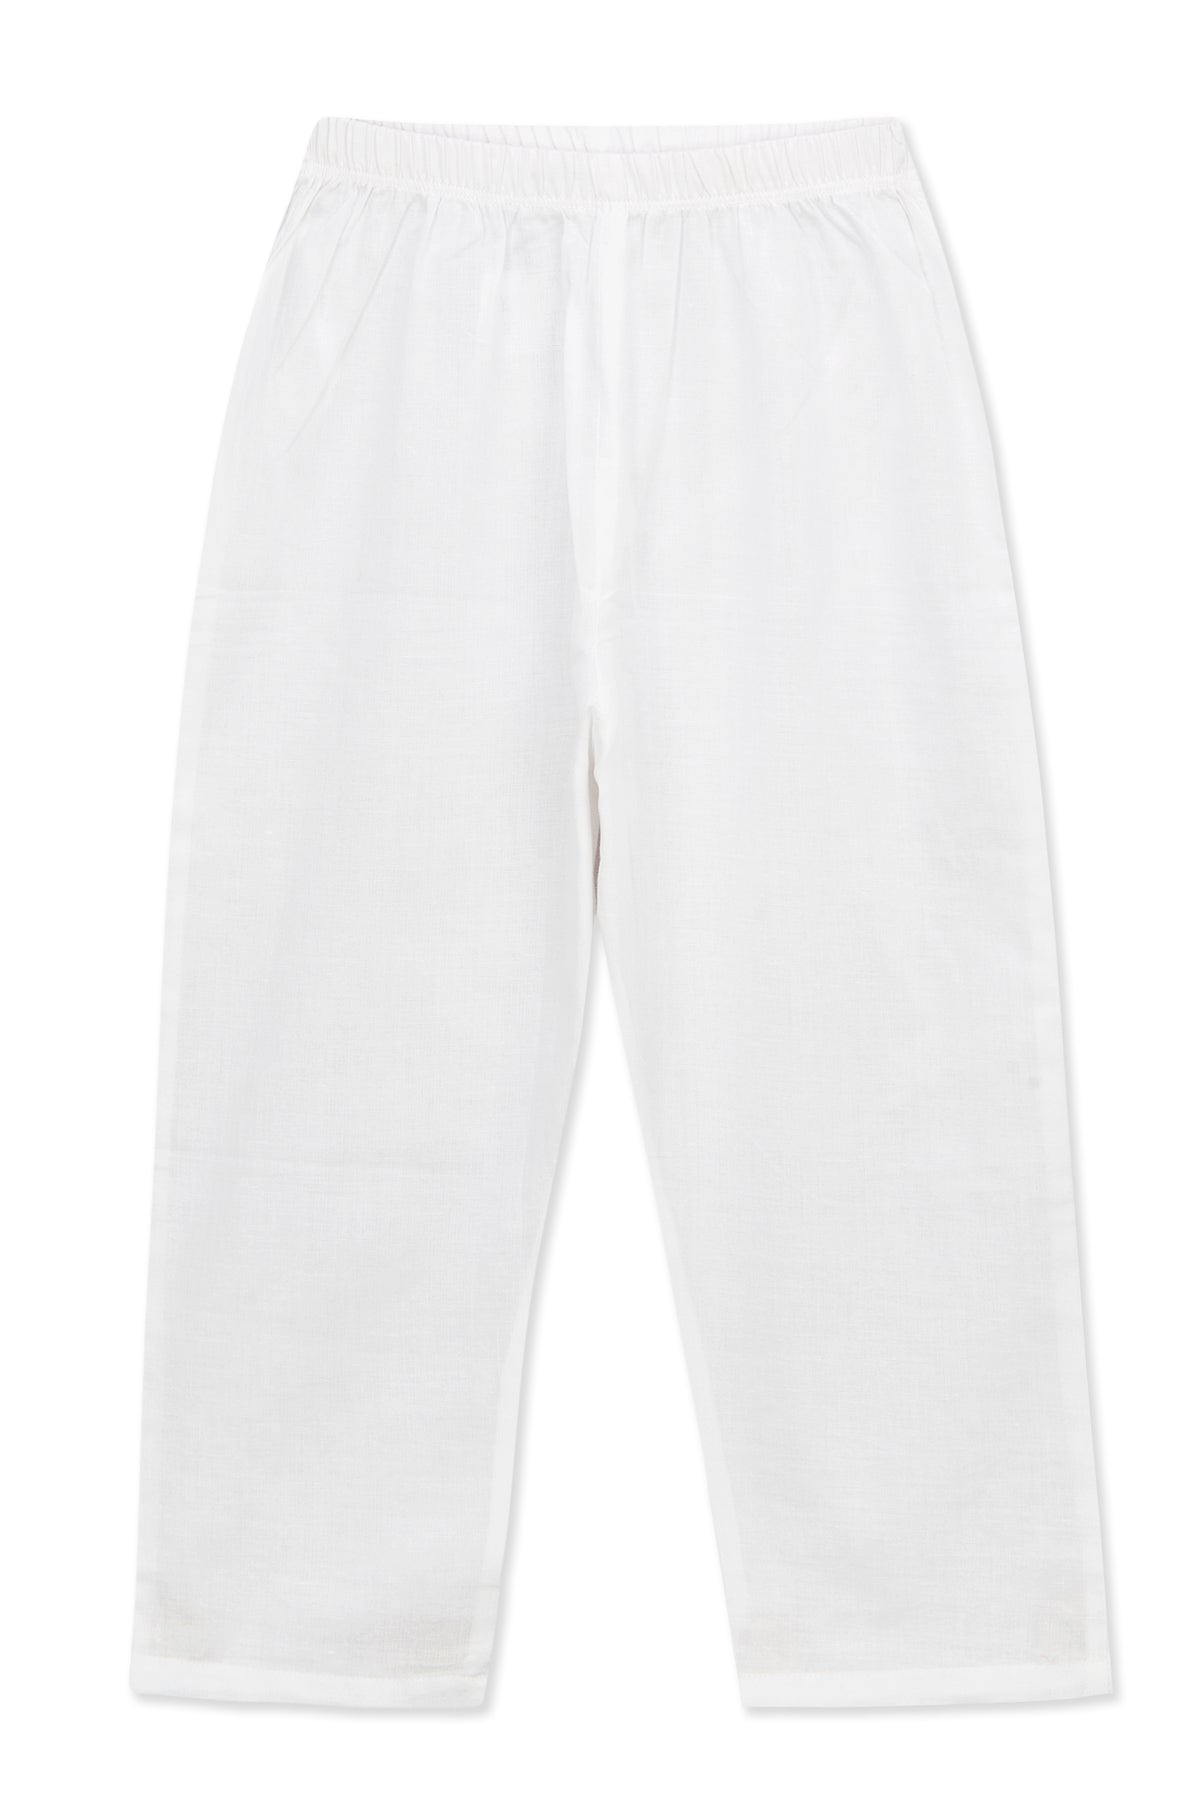 For The Love Of White Kurta Pyjama